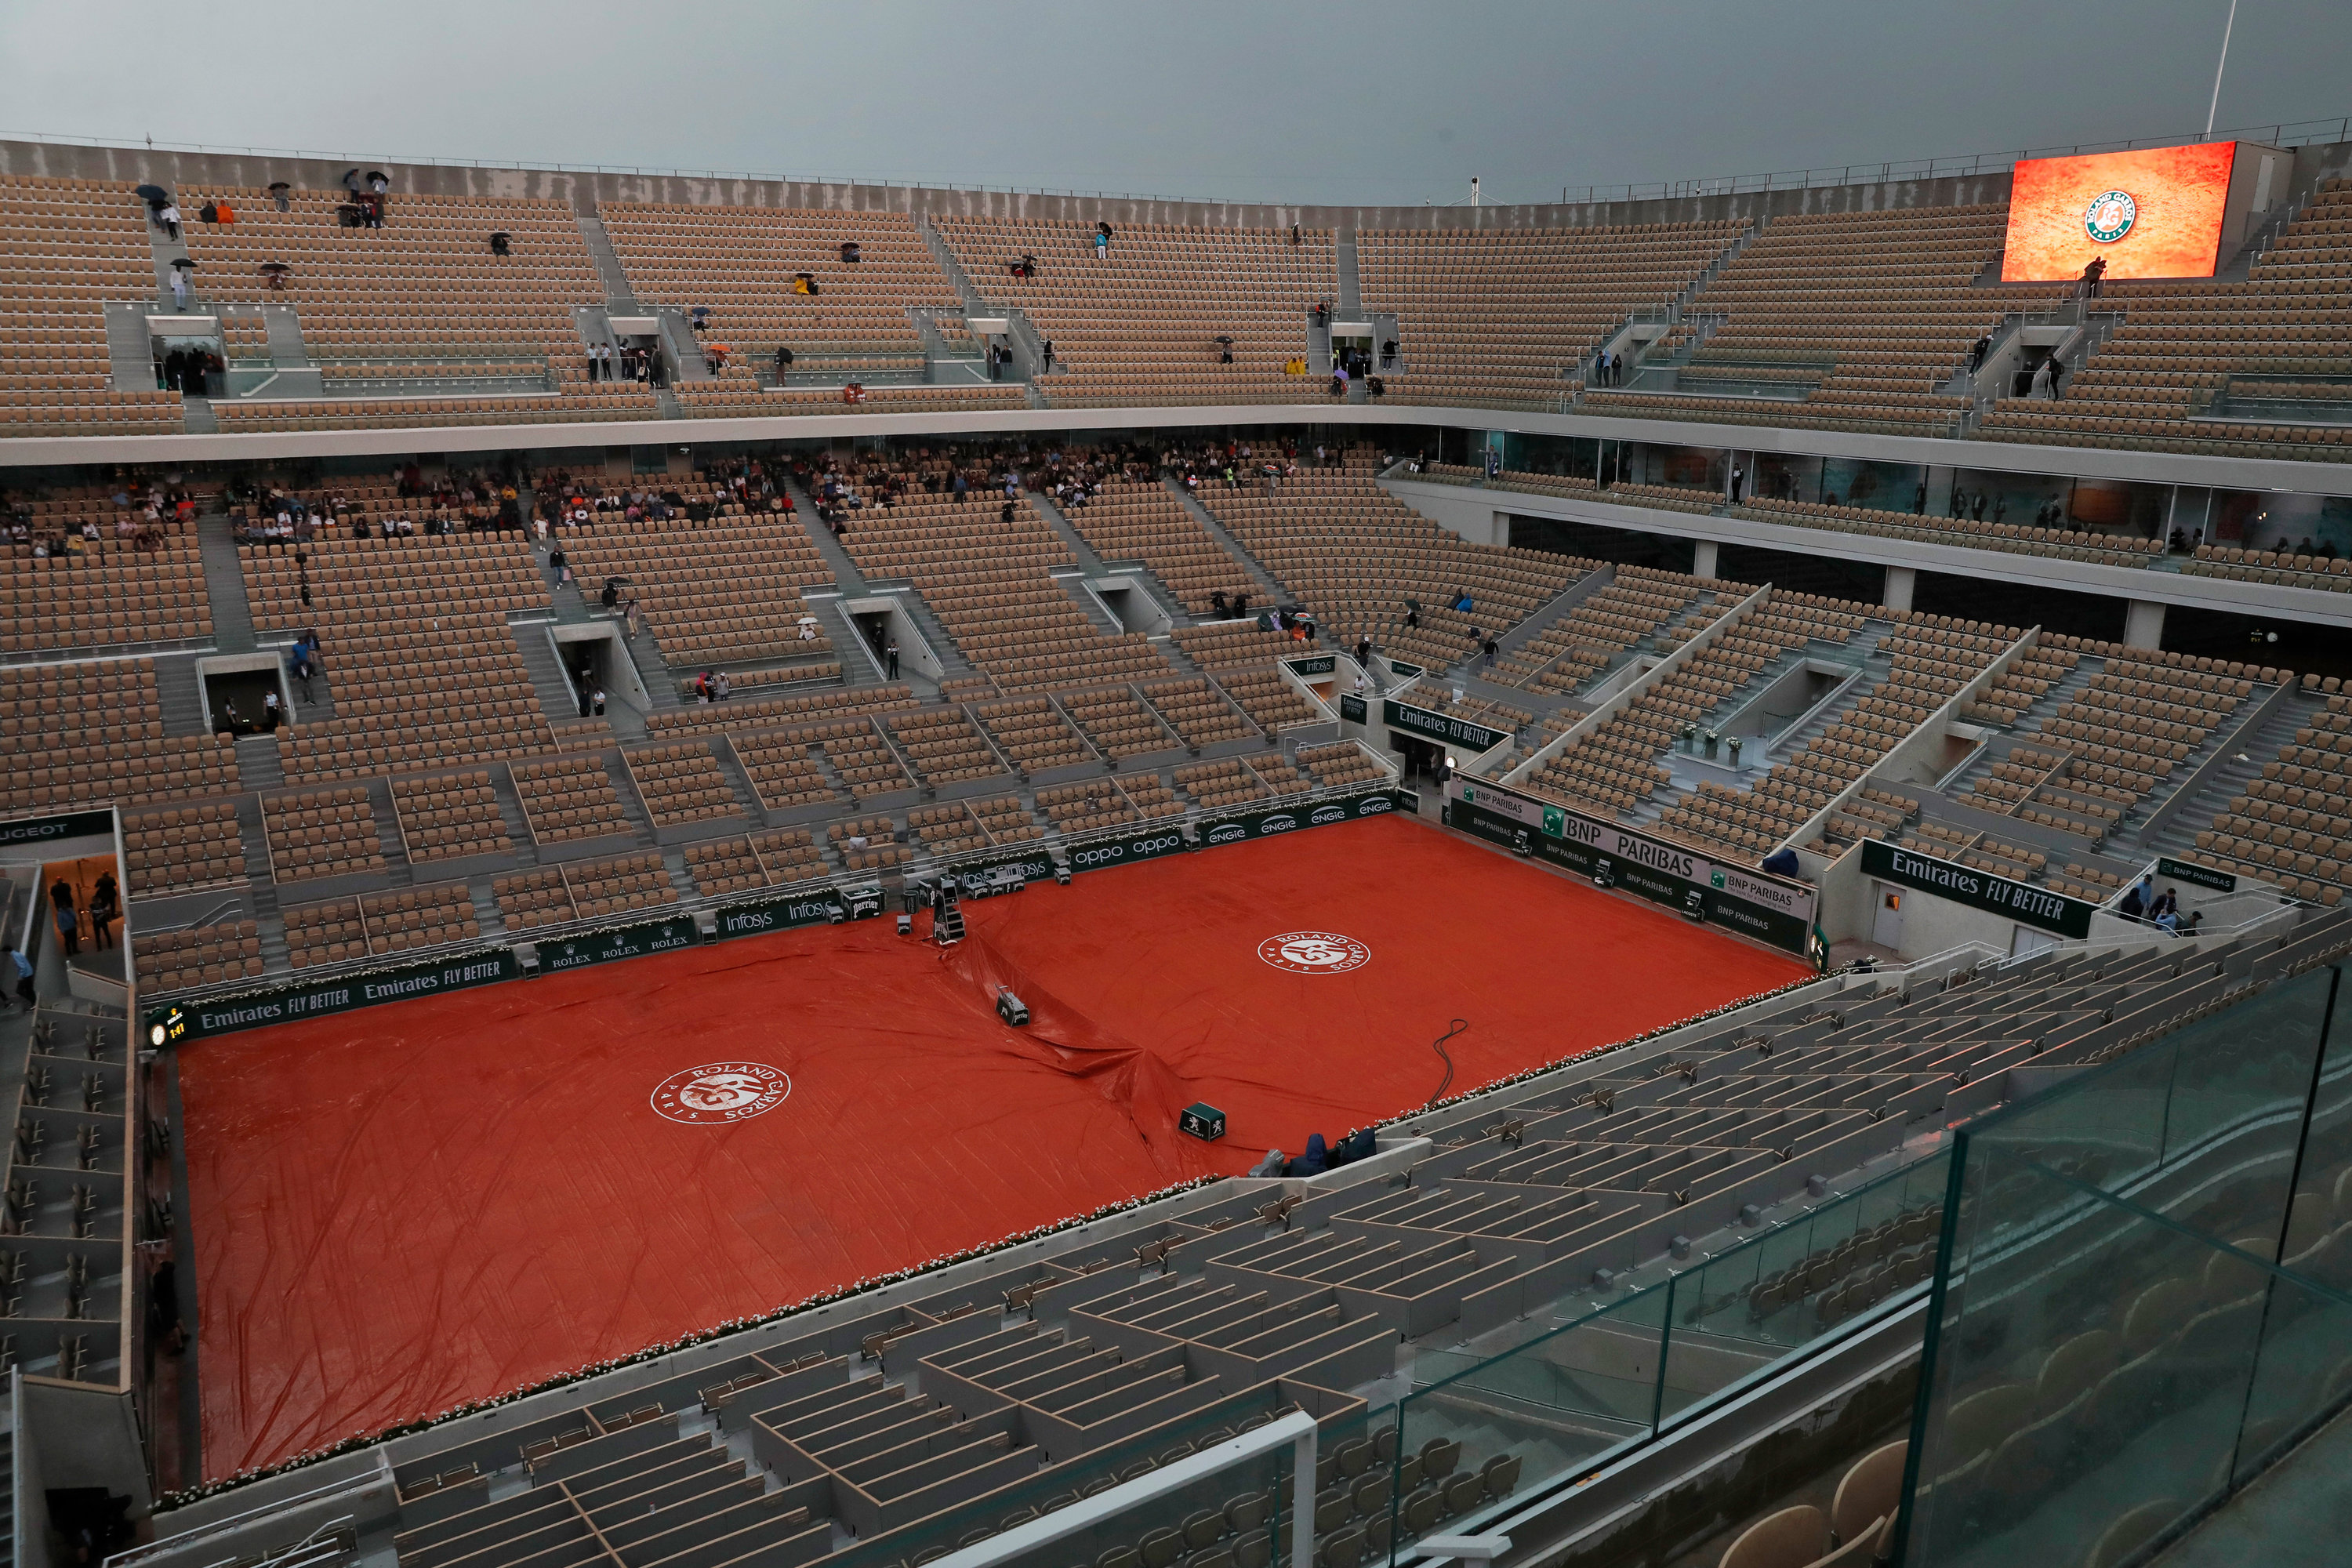 Roland-Garros-Stadion 34.000 Sportfans können sich einige Tennis- und Boxwettbewerbe im Roland-Garros-Stadion ansehen.  Das Stadion – das 1928 am südlichen Rand des Bois de Boulogne gebaut wurde – gehört dem französischen Tennisverband und hier finden jährliche die French Open statt. 2005 gewann Tennis-Legende Rafael Nadal hier ihr erstes Grand-Slam-Turnier.